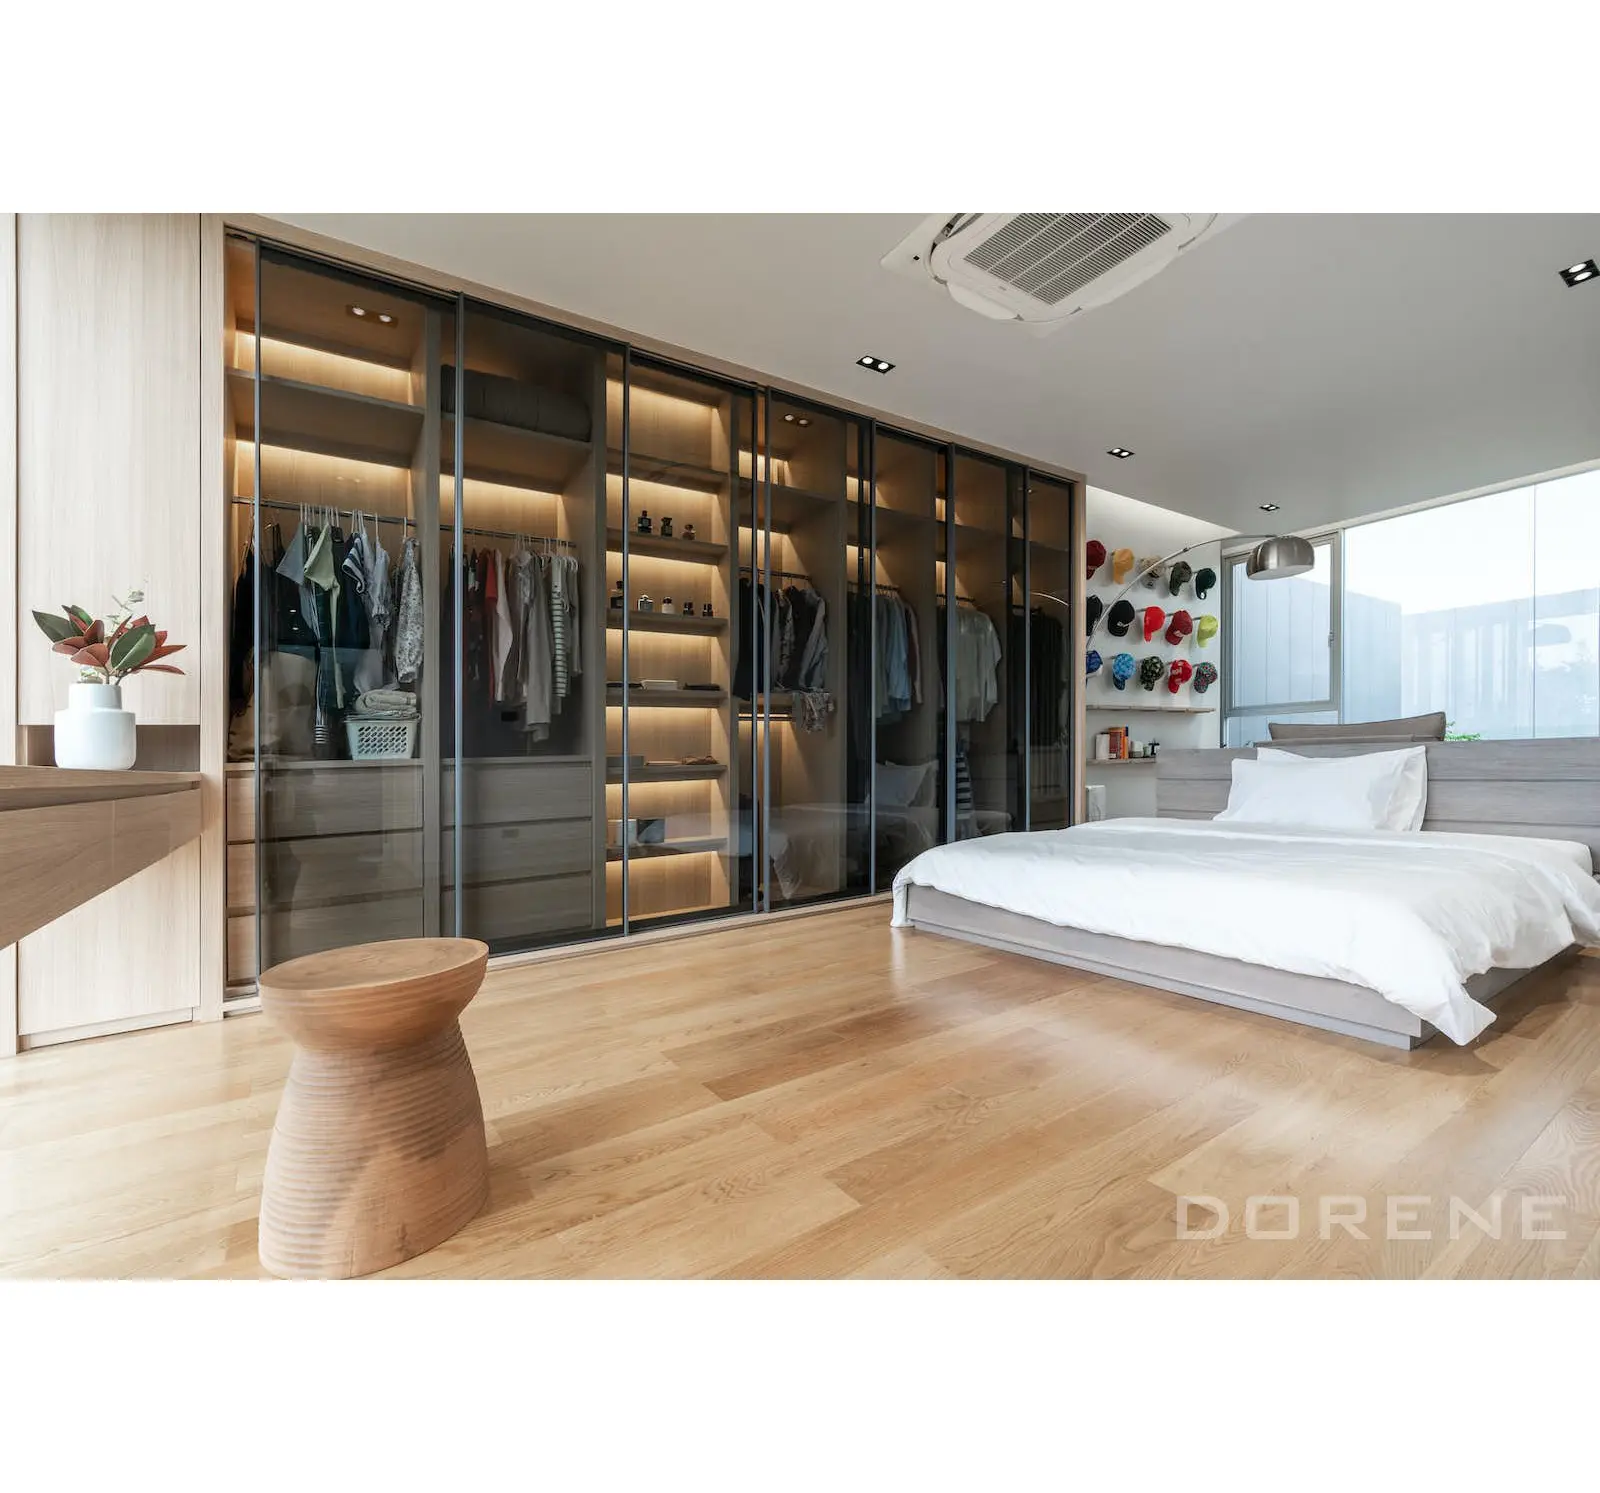 Dorene-armario de almacenamiento completo para dormitorio de Hotel, armarios modulares de madera con diseños personalizados, muebles con puerta corredera, modernos, 2023